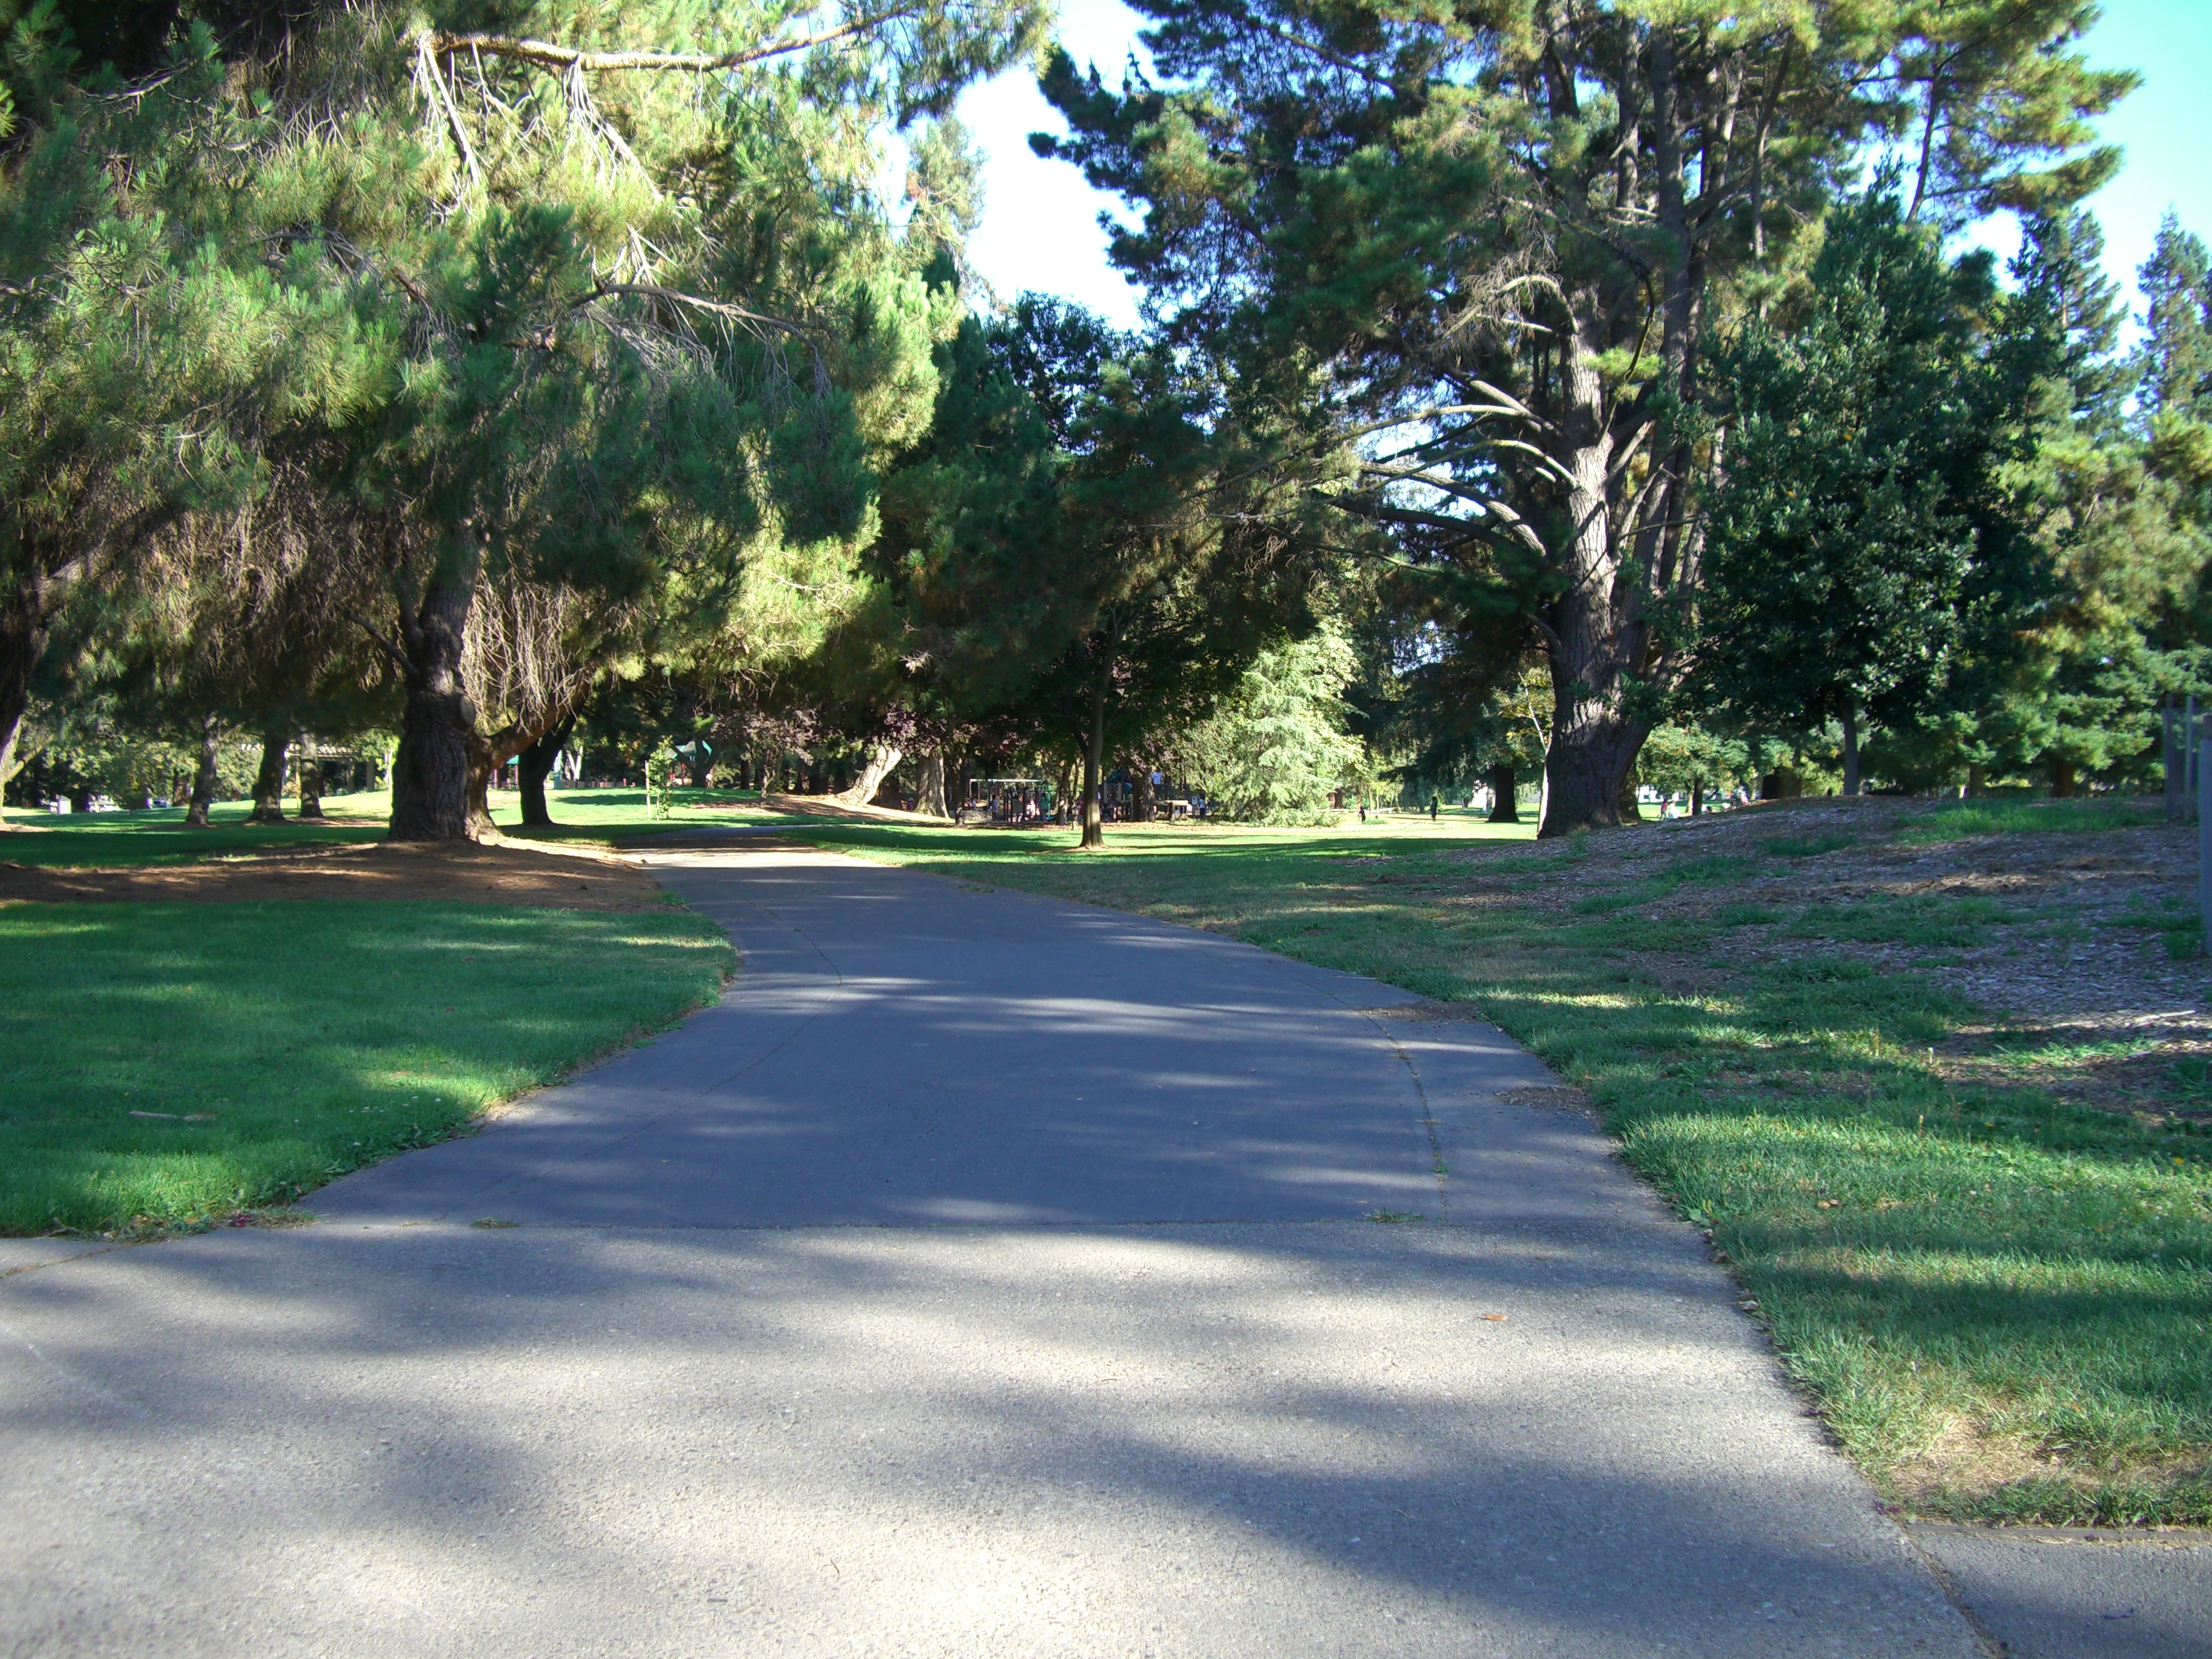 File:Park path - panoramio.jpg - Wikimedia Commons